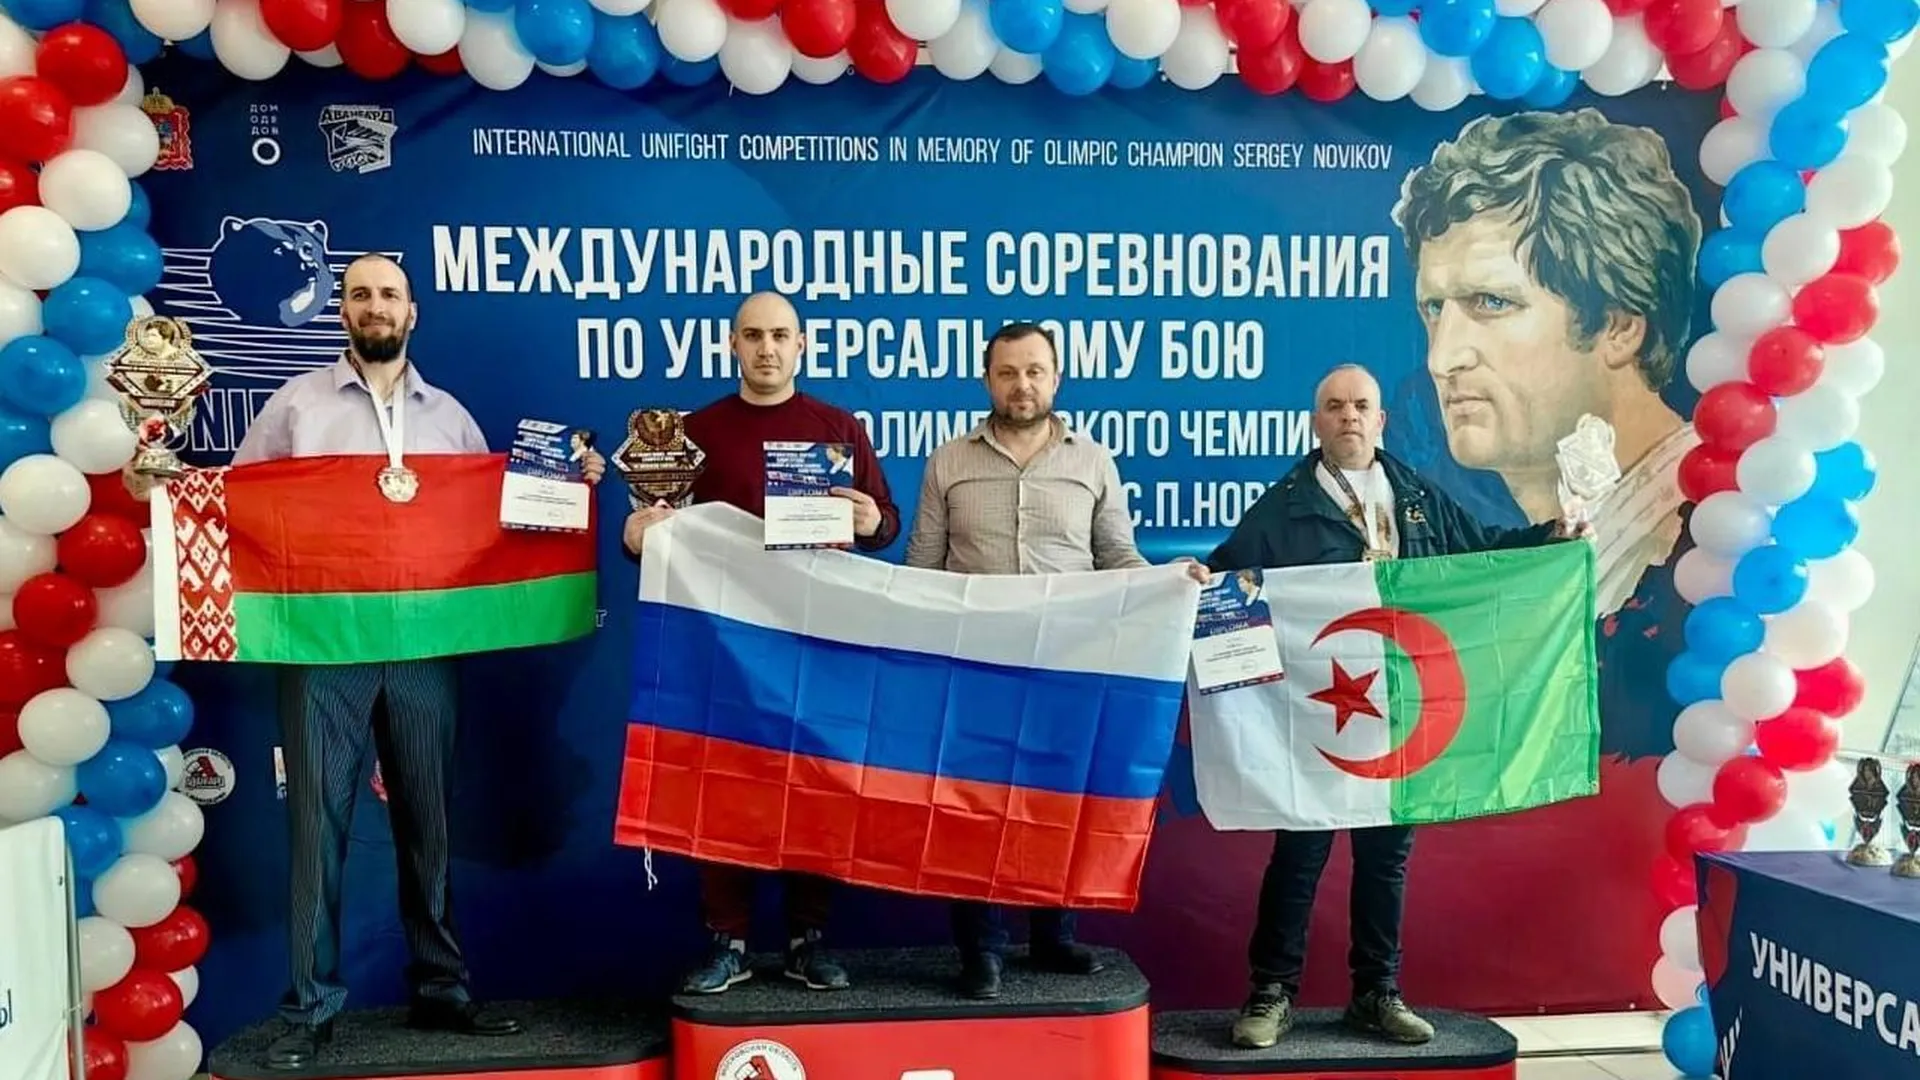 В Домодедове прошли масштабные Международные соревнования по универсальному бою